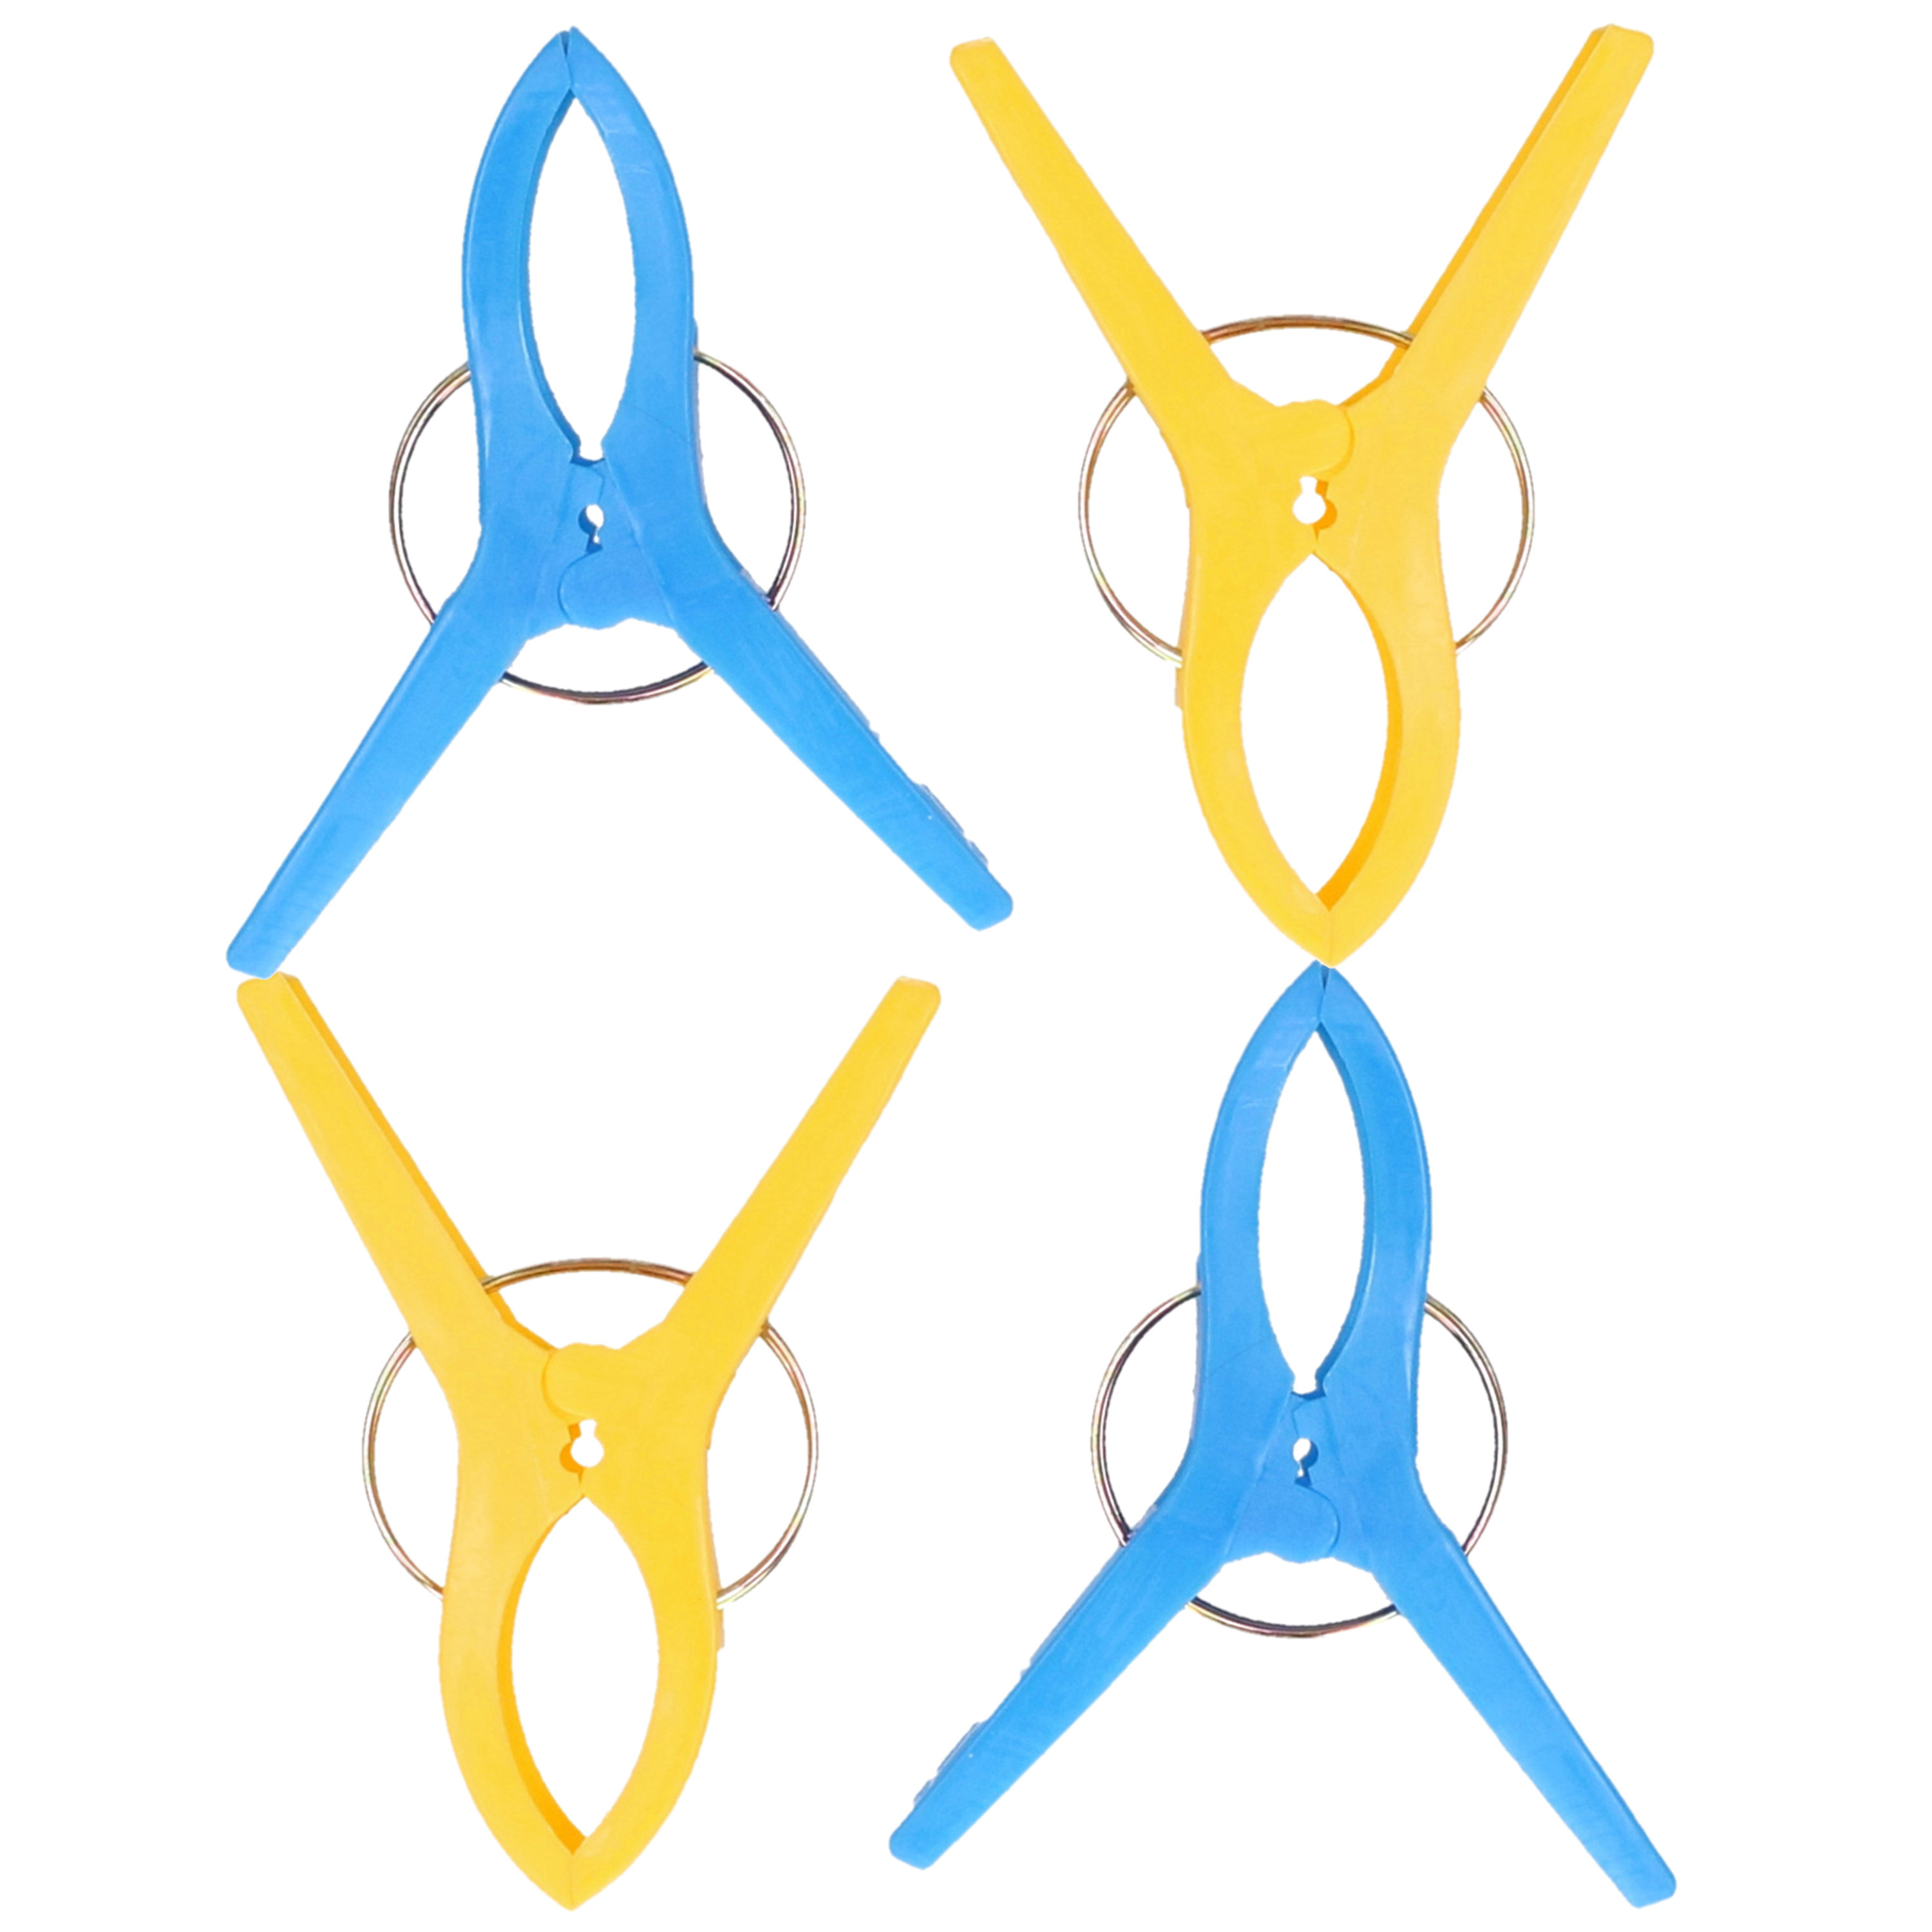 Handdoekknijpers XL 10x blauw-geel kunststof 12 cm wasknijpers